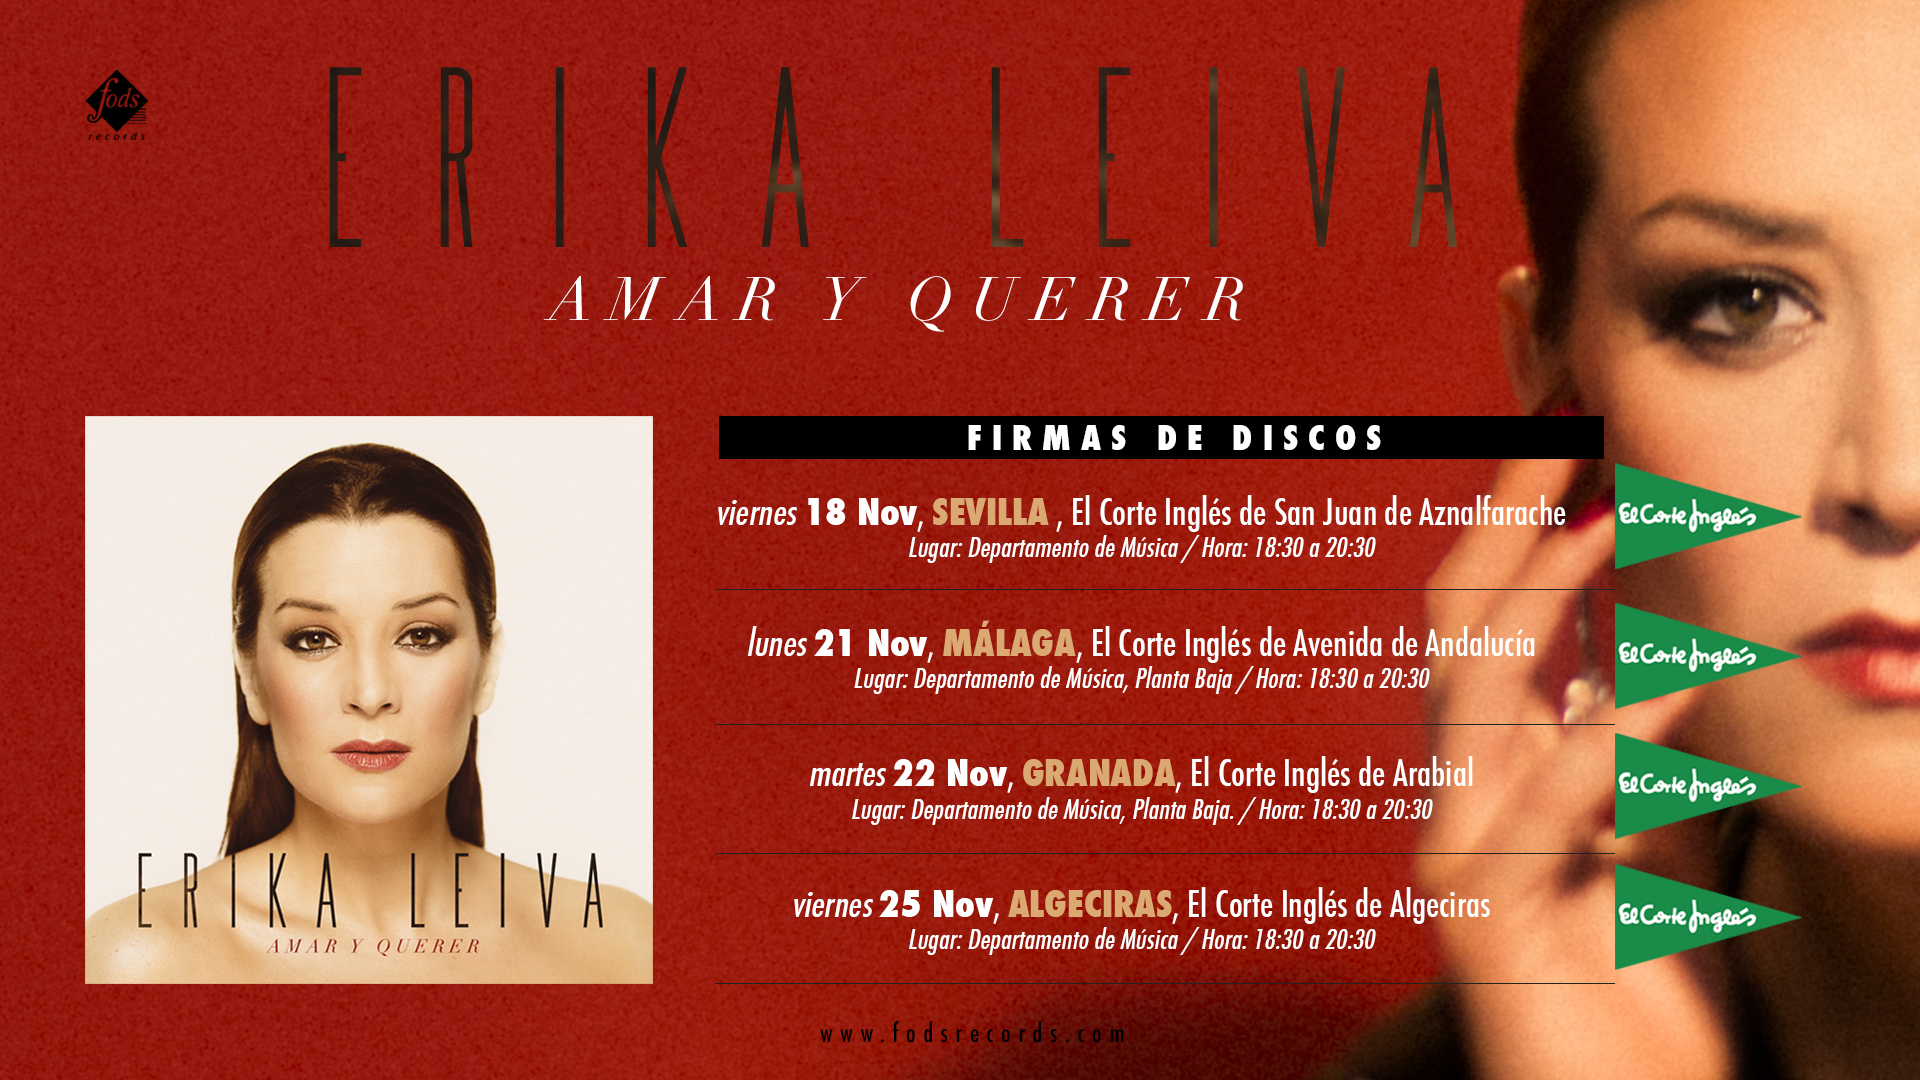 erika-leiva-lanzamiento-firmas-de-discos